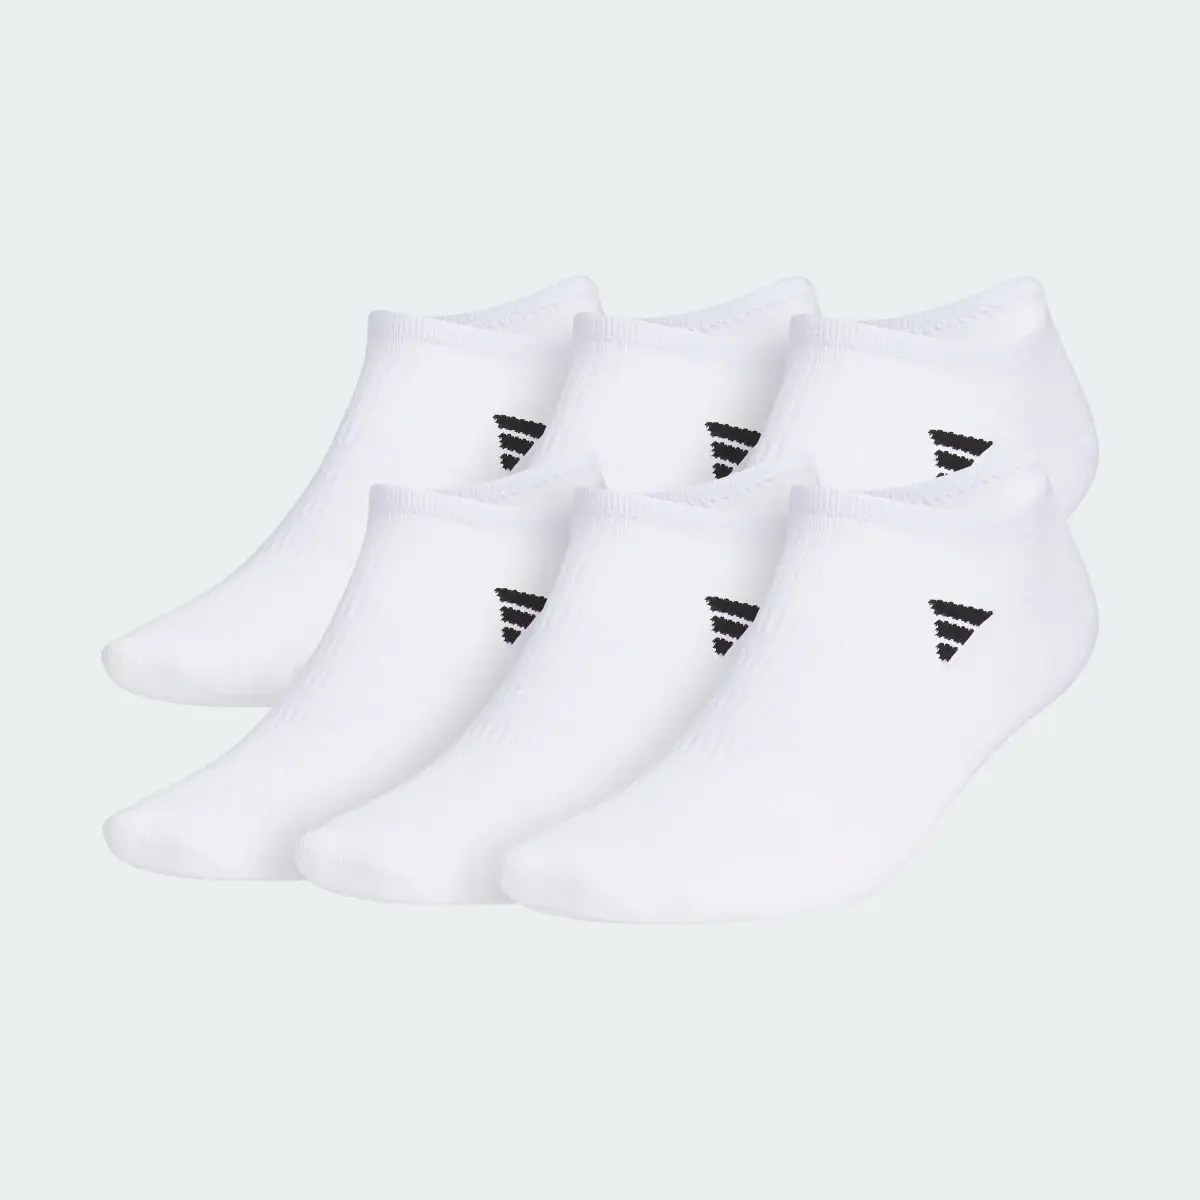 Adidas Superlite 3.0 6-Pack No-Show Socks. 2